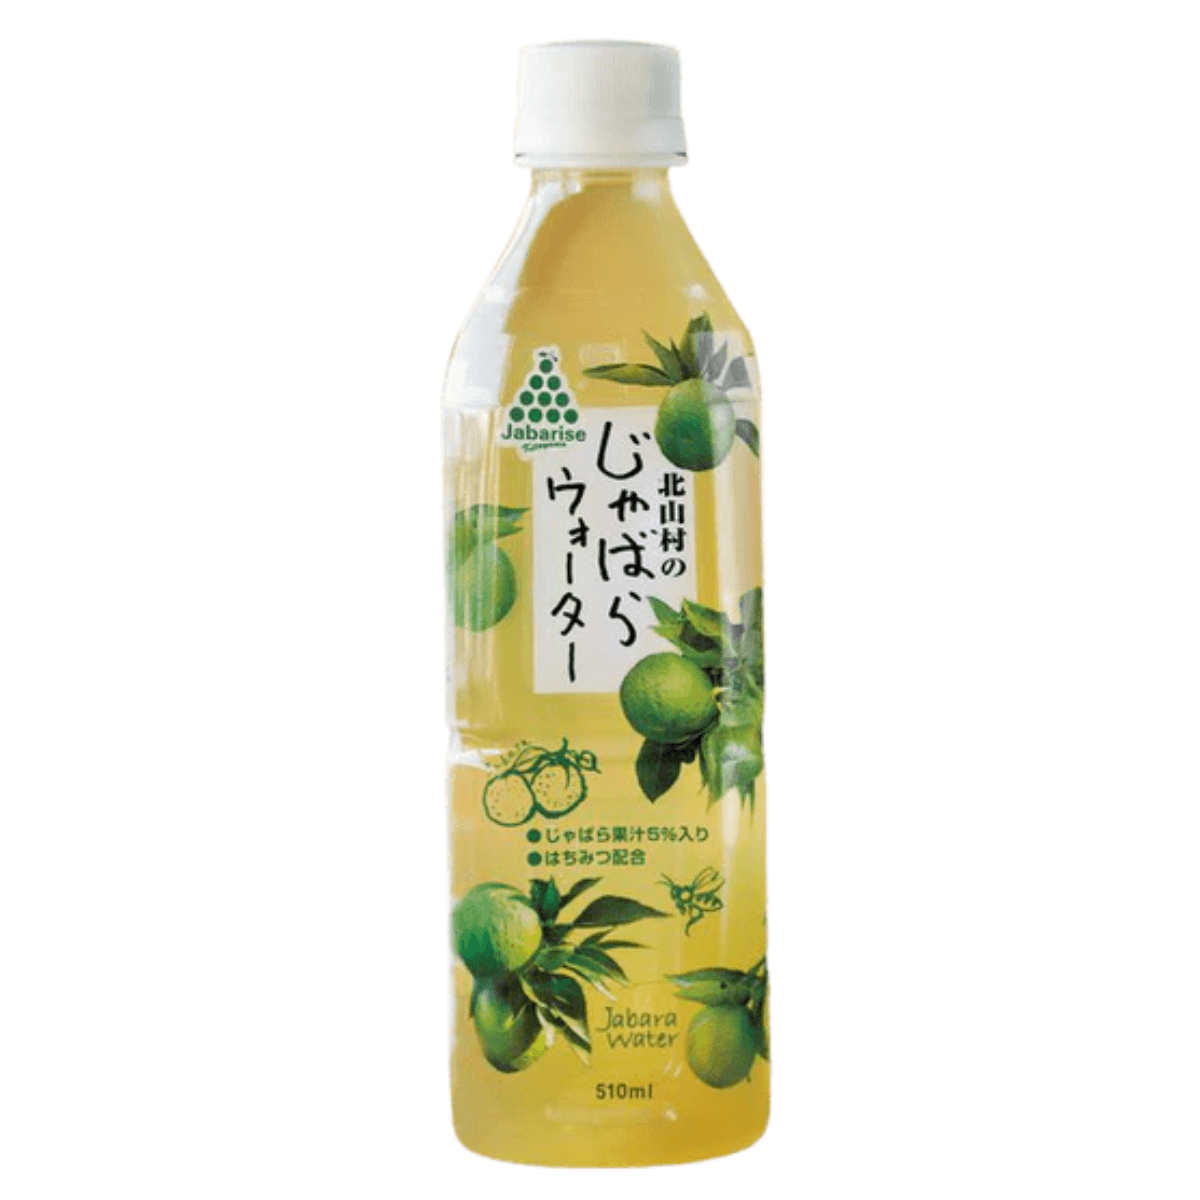 Jabaraize Jabara Citrus Soft Drink - Tokyo Fresh Direct